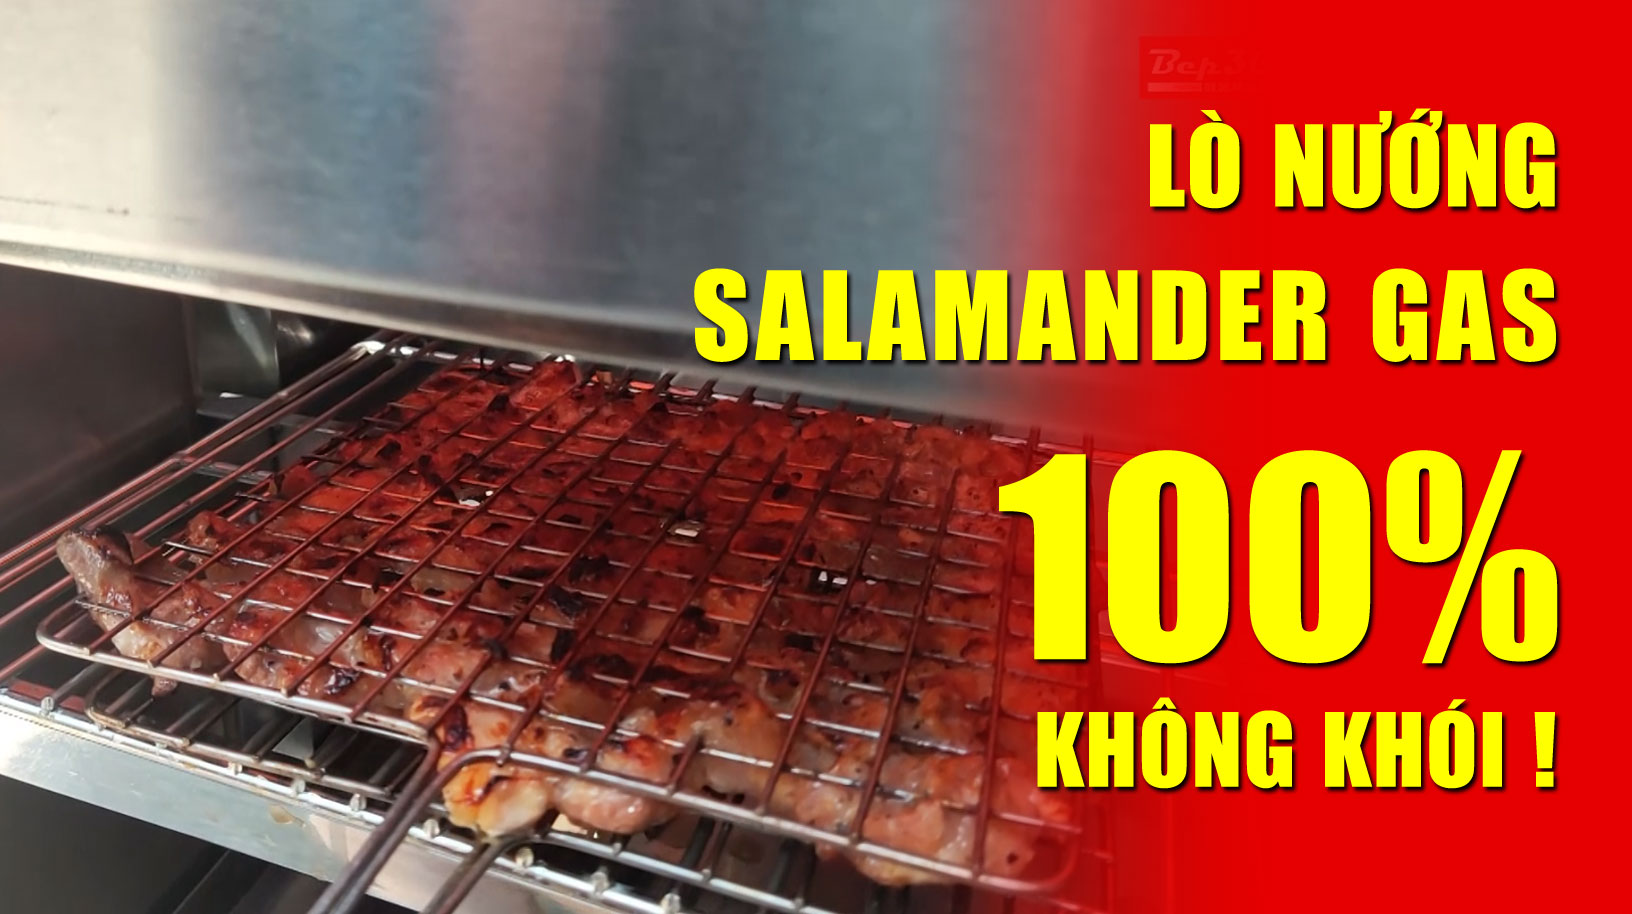 Bếp nướng salamander gas 100% không khói